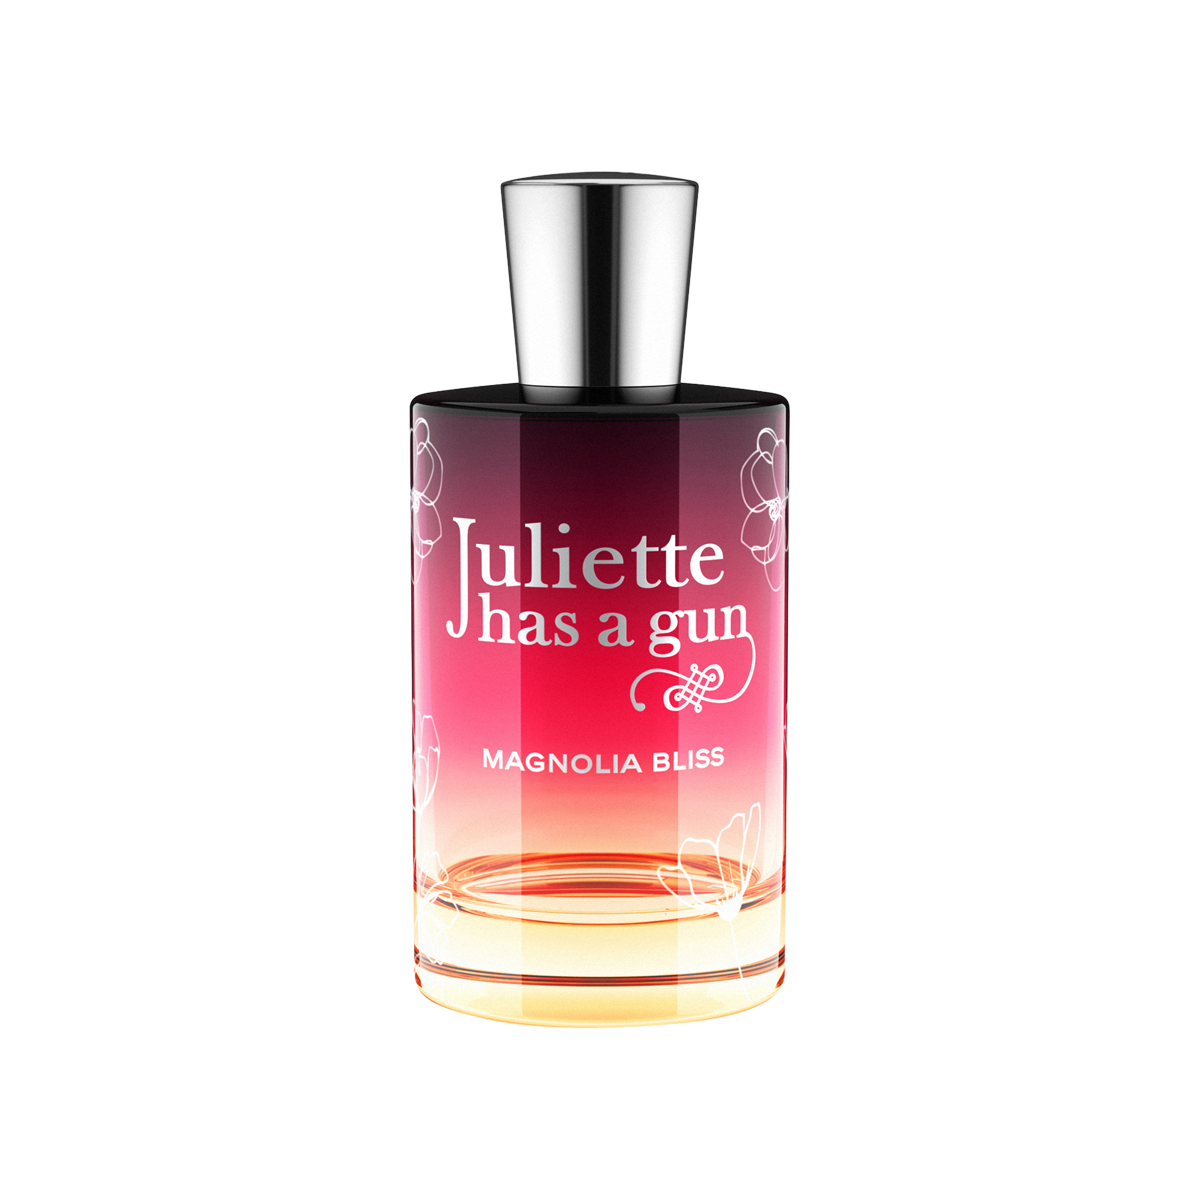 Juliette has a Gun - Magnolia Bliss Eau de Parfum